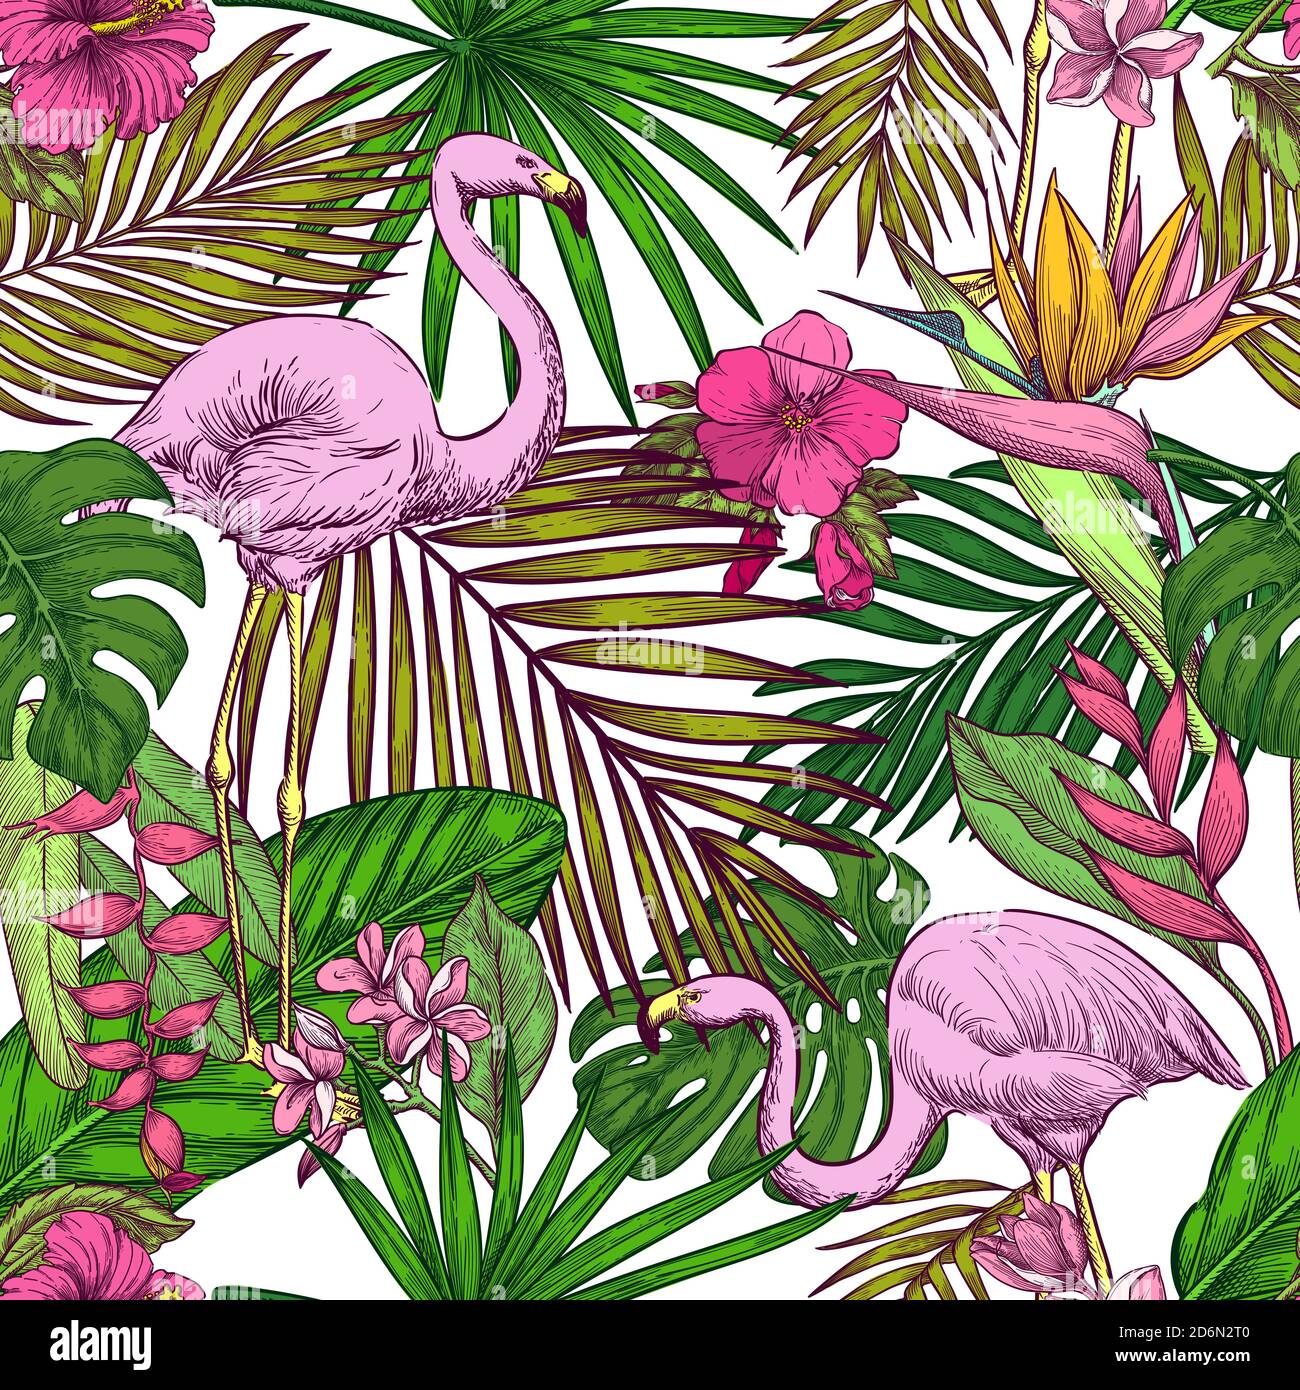 Tropisches Nahtmuster. Rosa Flamingo, exotische Blumen und Palmblätter auf weißem Hintergrund. Vektorfarbe handgezeichnete Skizze Illustration. Sommer tren Stock Vektor